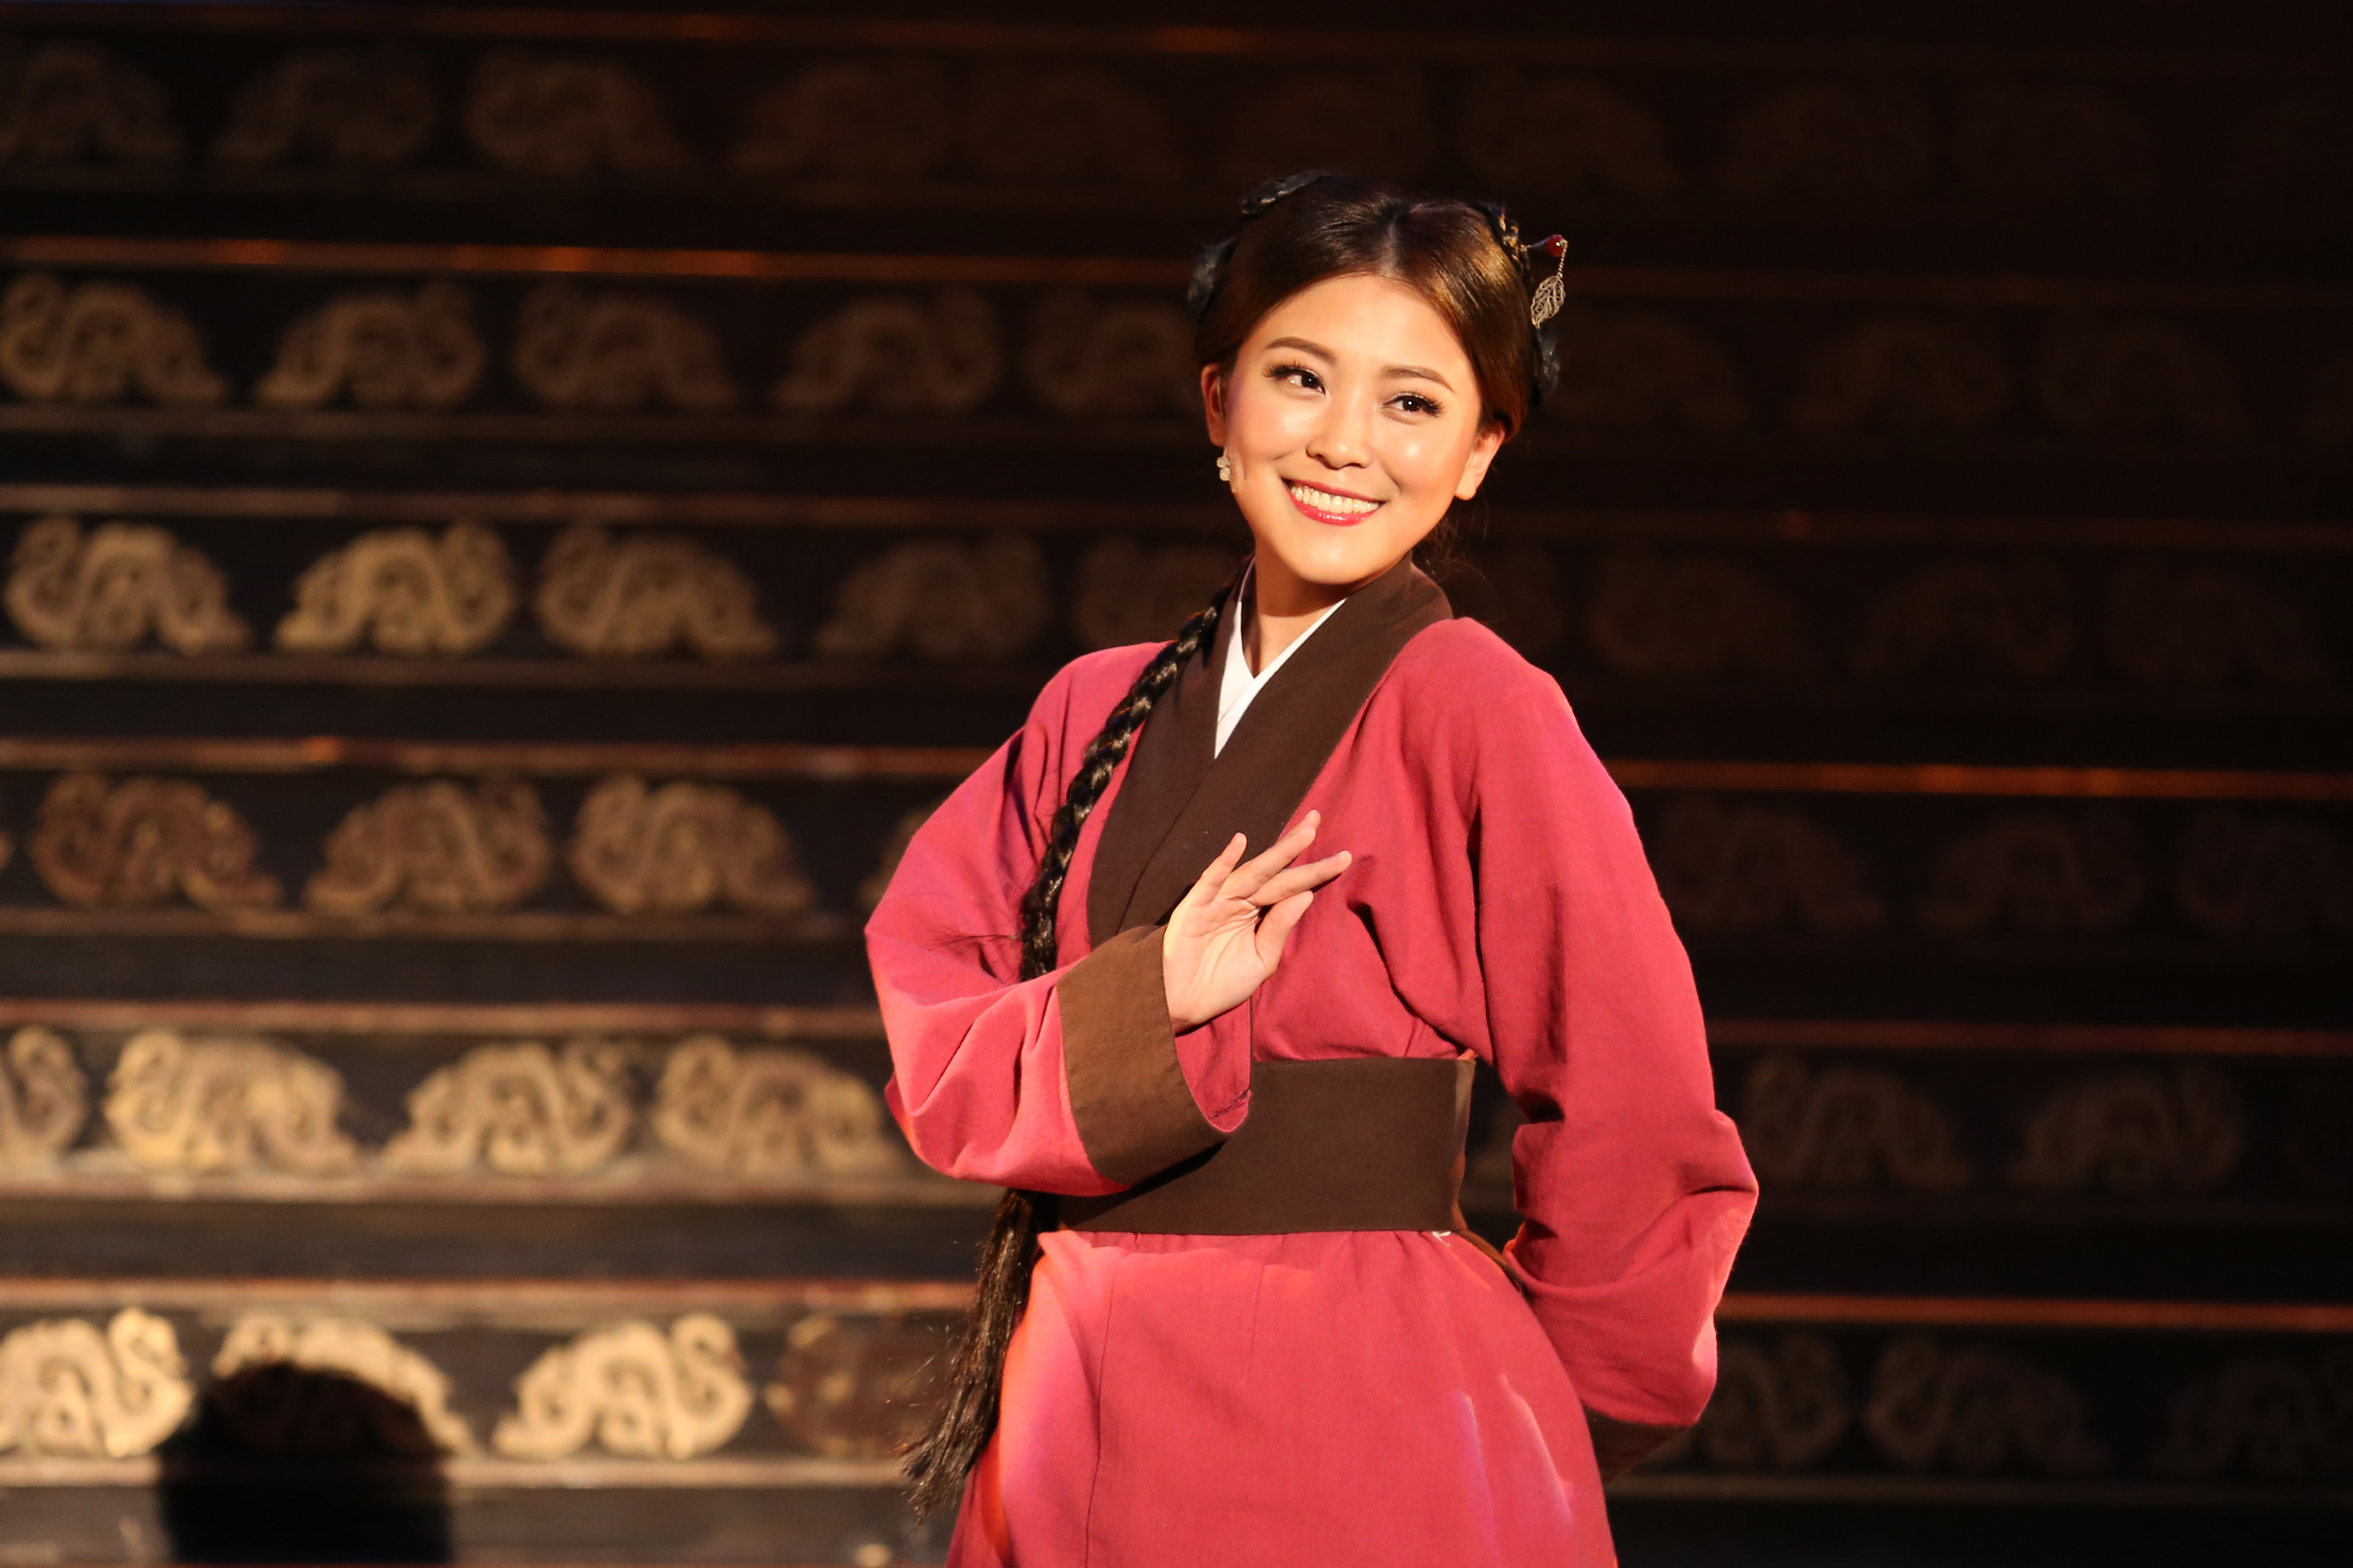 卓文萱在劇中飾演古典美人西施。全民大劇團提供